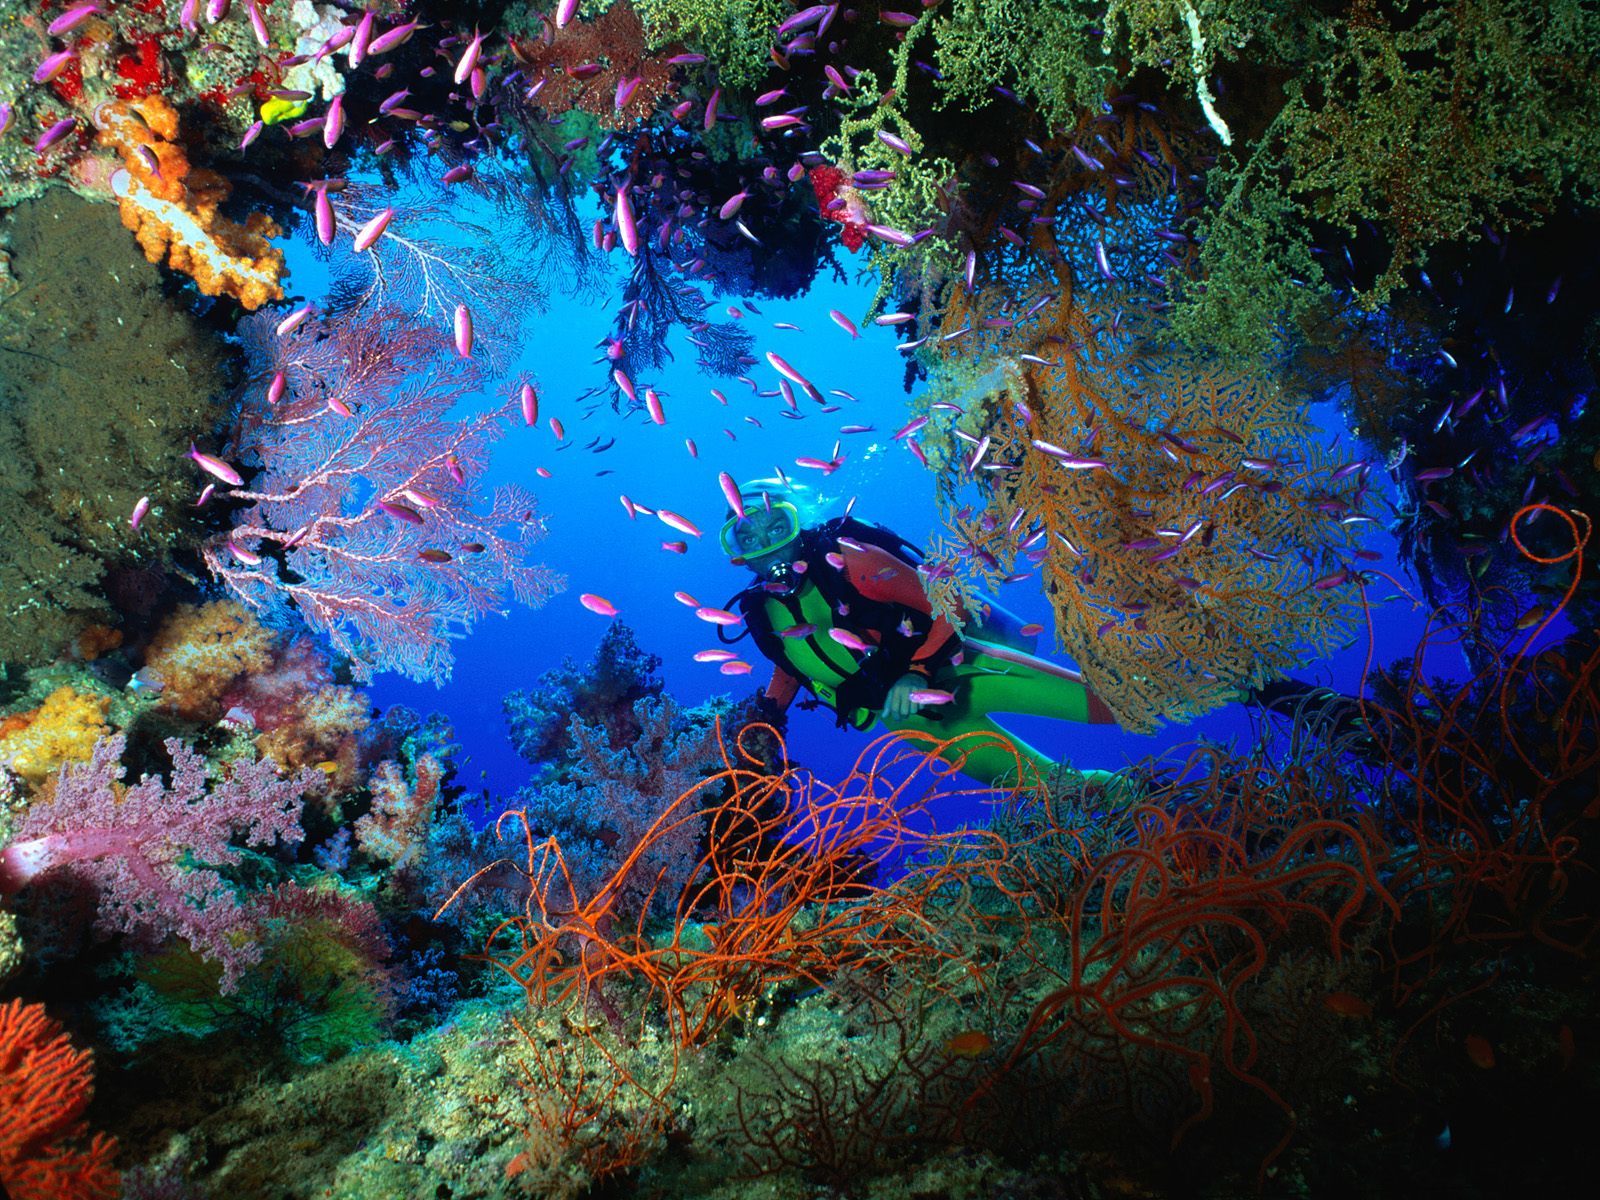 Δείτε τα 10 σημαντικότερα είδη κοραλλίων!